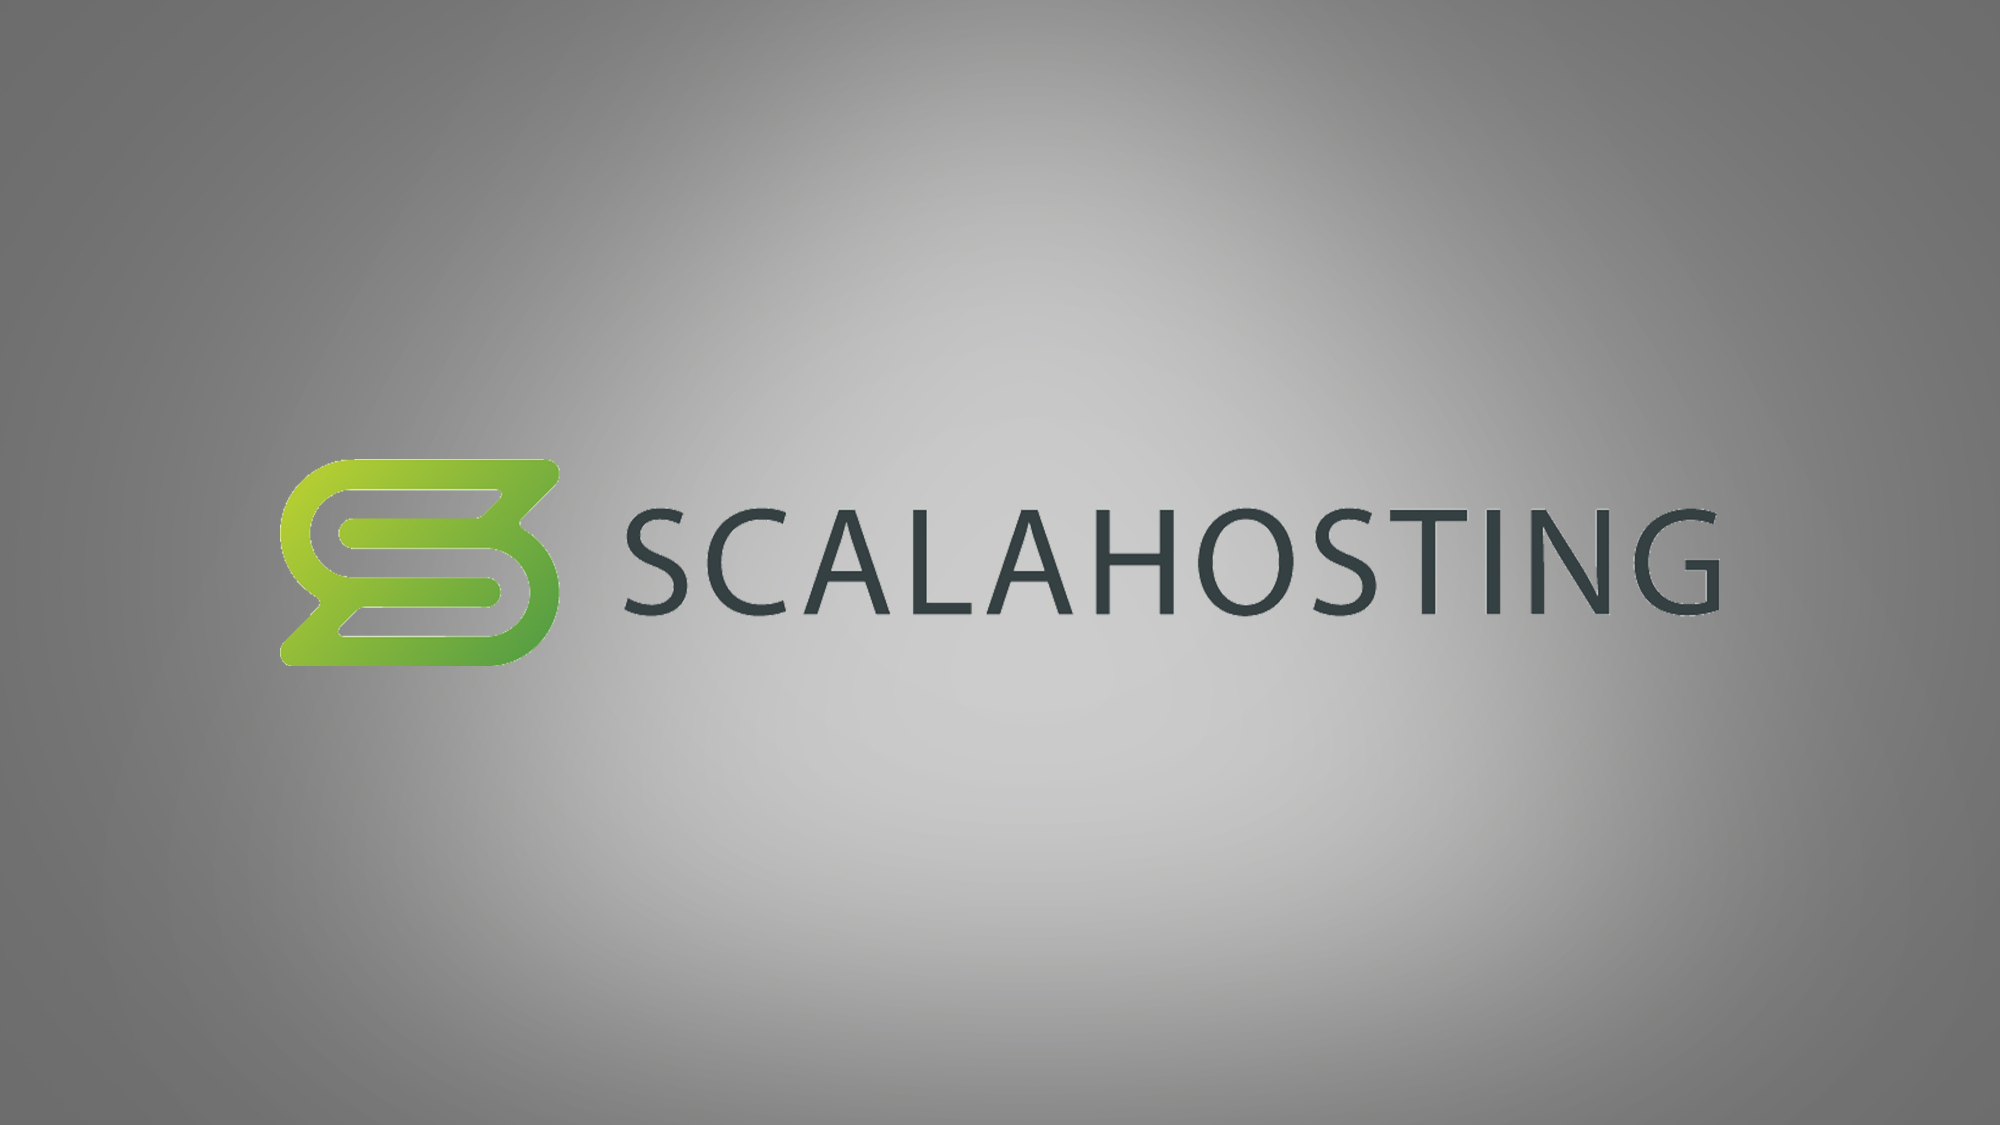 ScalaHosting logo on grey background